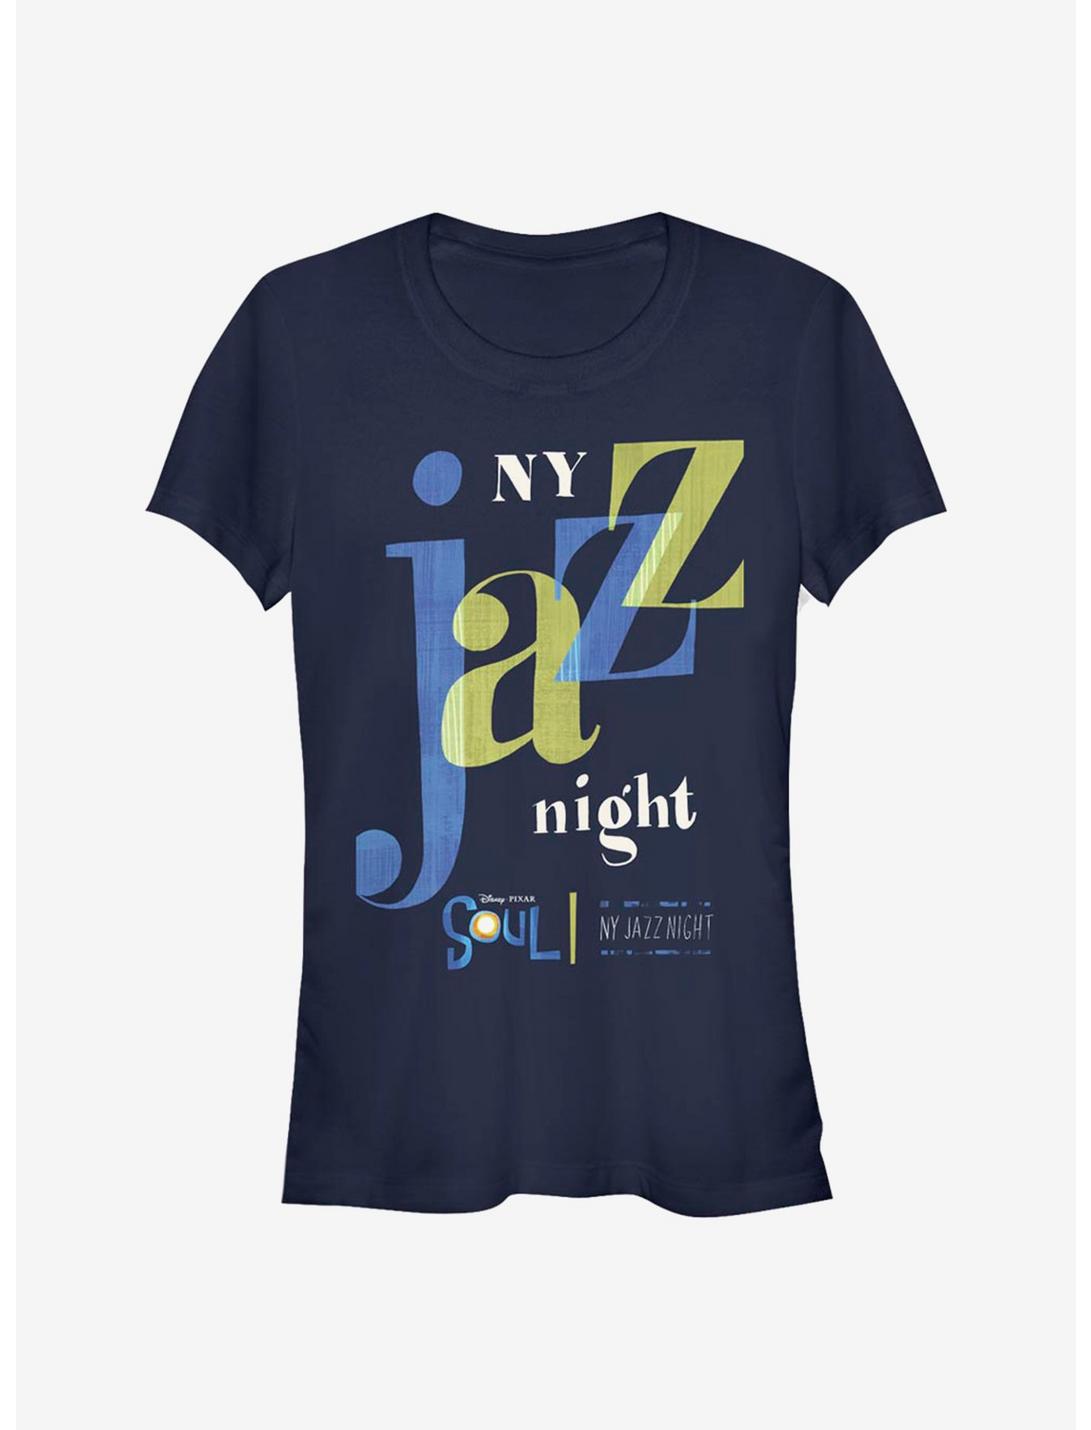 Disney Pixar Soul NY Jazz Night Girls T-Shirt, NAVY, hi-res